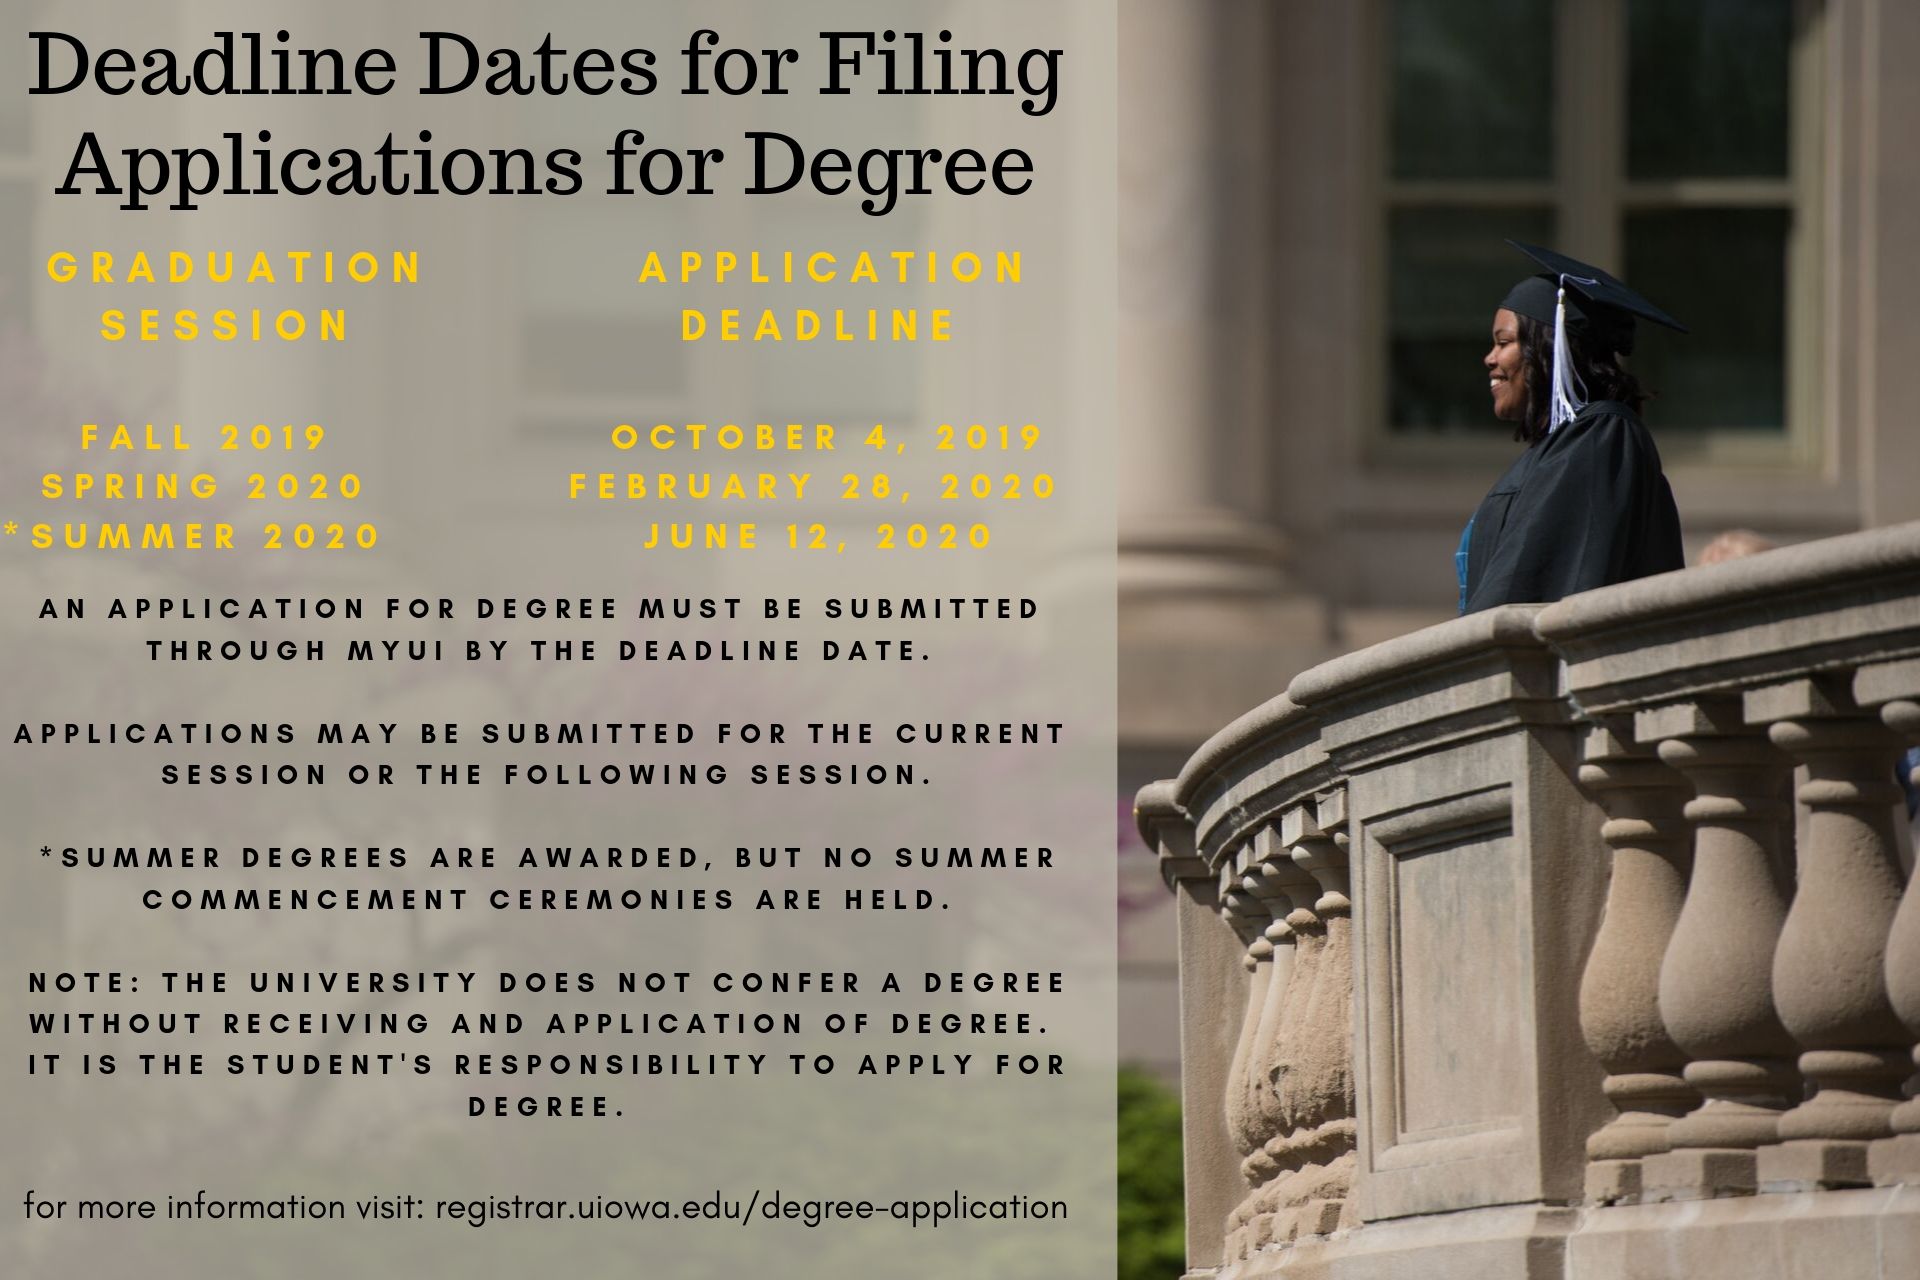 deadline_dates_for_filing_applications_for_degree.jpg